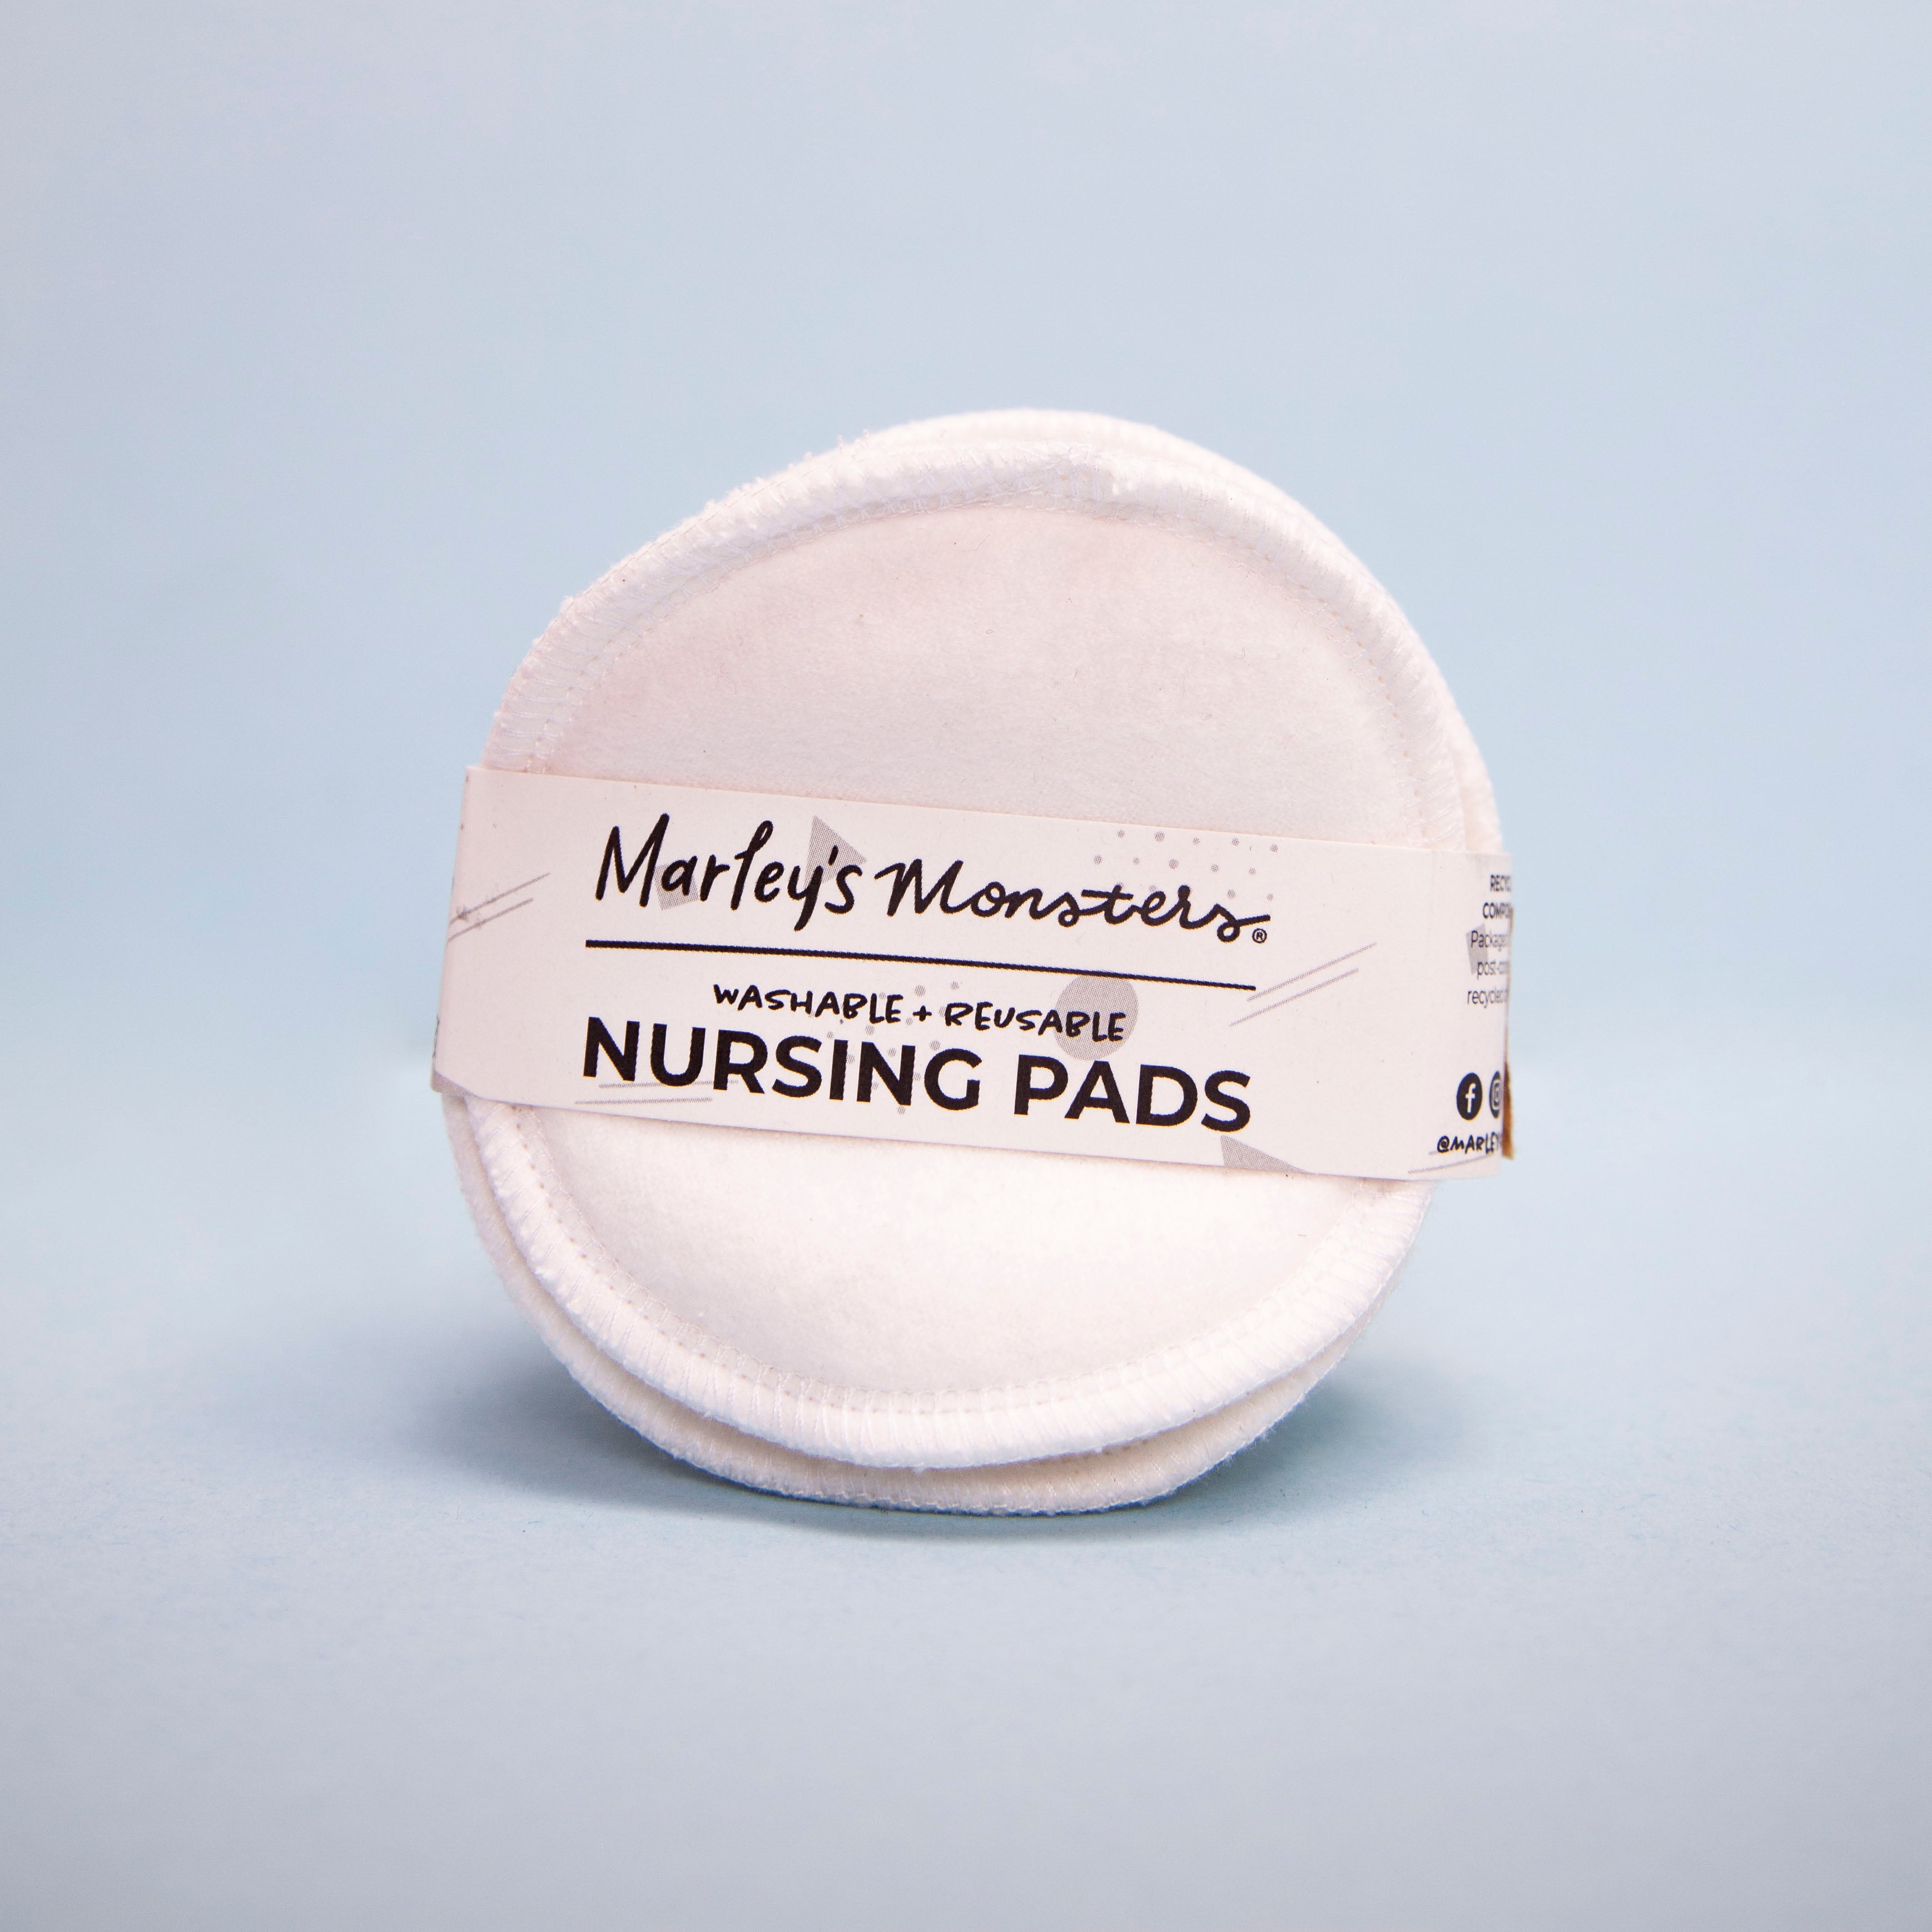 Reusable nursing pads